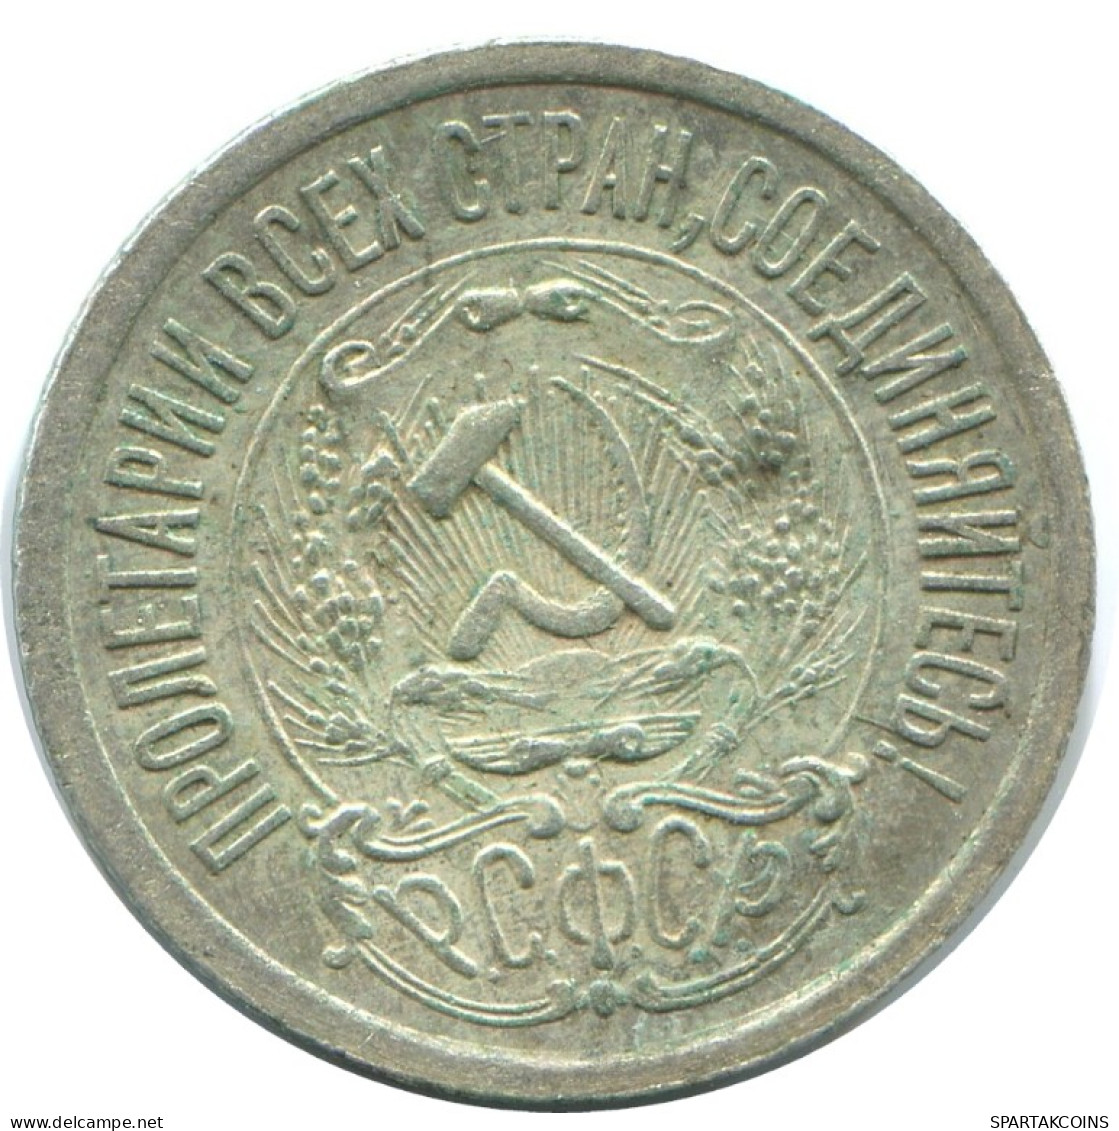 15 KOPEKS 1923 RUSSIA RSFSR SILVER Coin HIGH GRADE #AF067.4.U.A - Russland